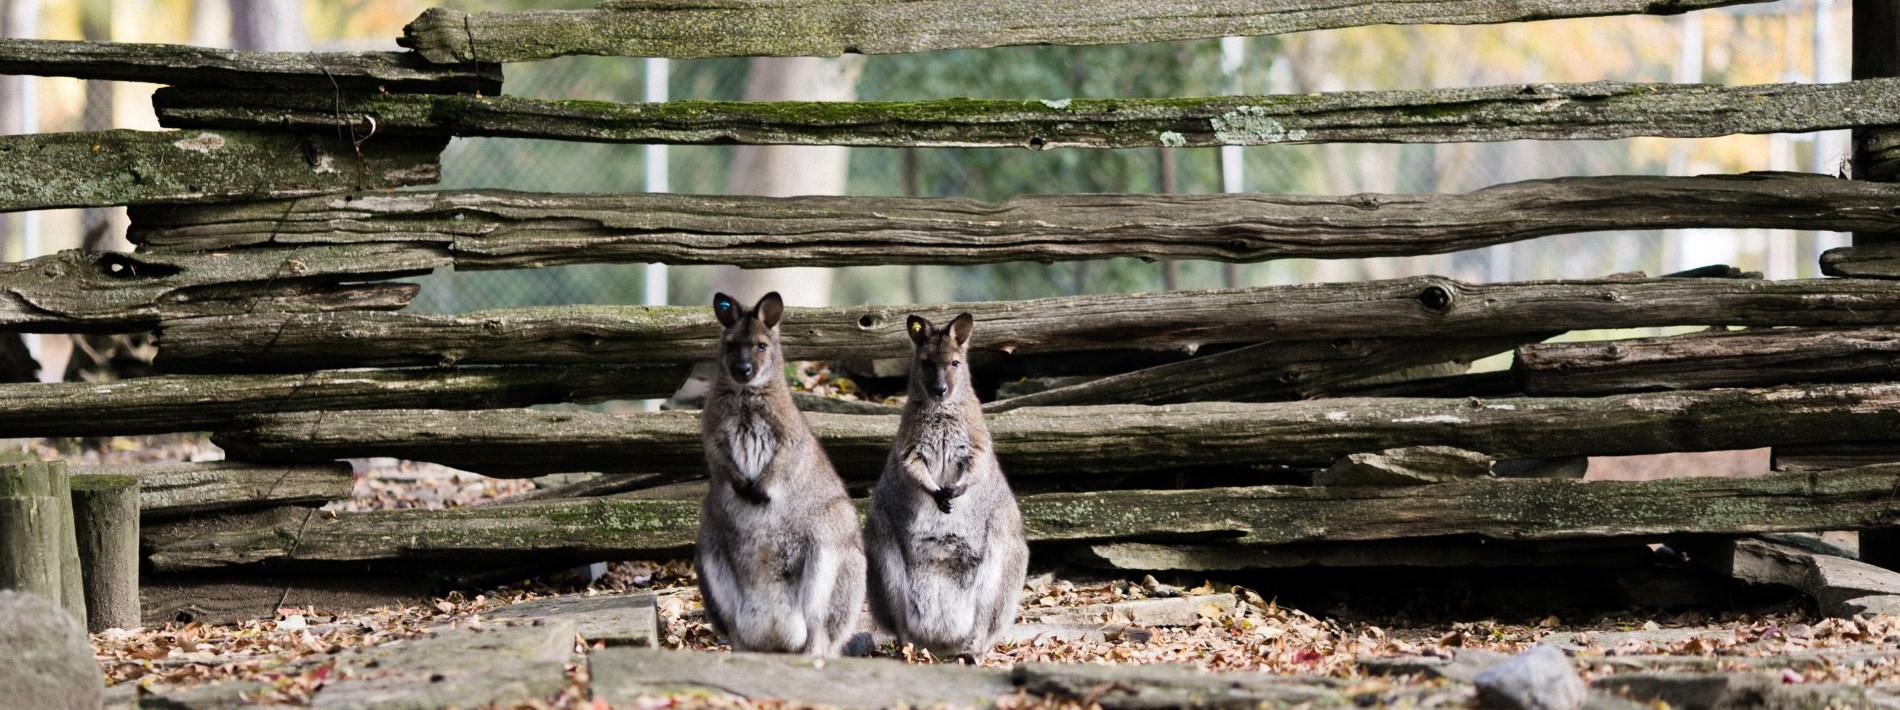 two kangaroos looking so cute